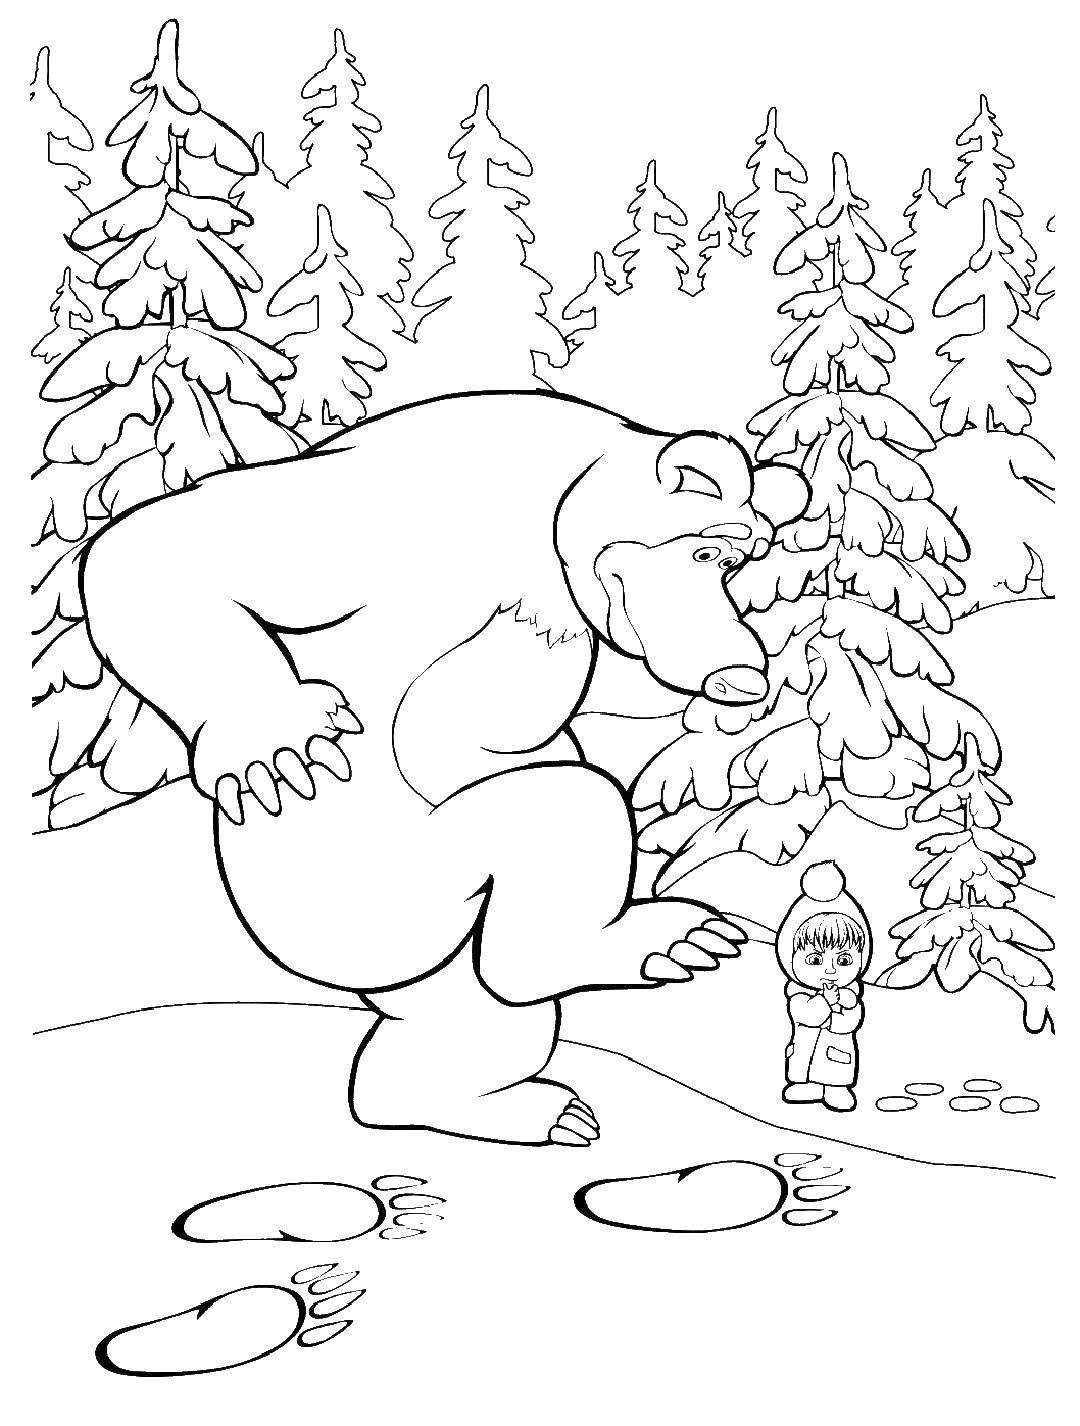 Раскраски для детей про озорную Машу из мультфильма Маша и медведь  Медведь и следы животных